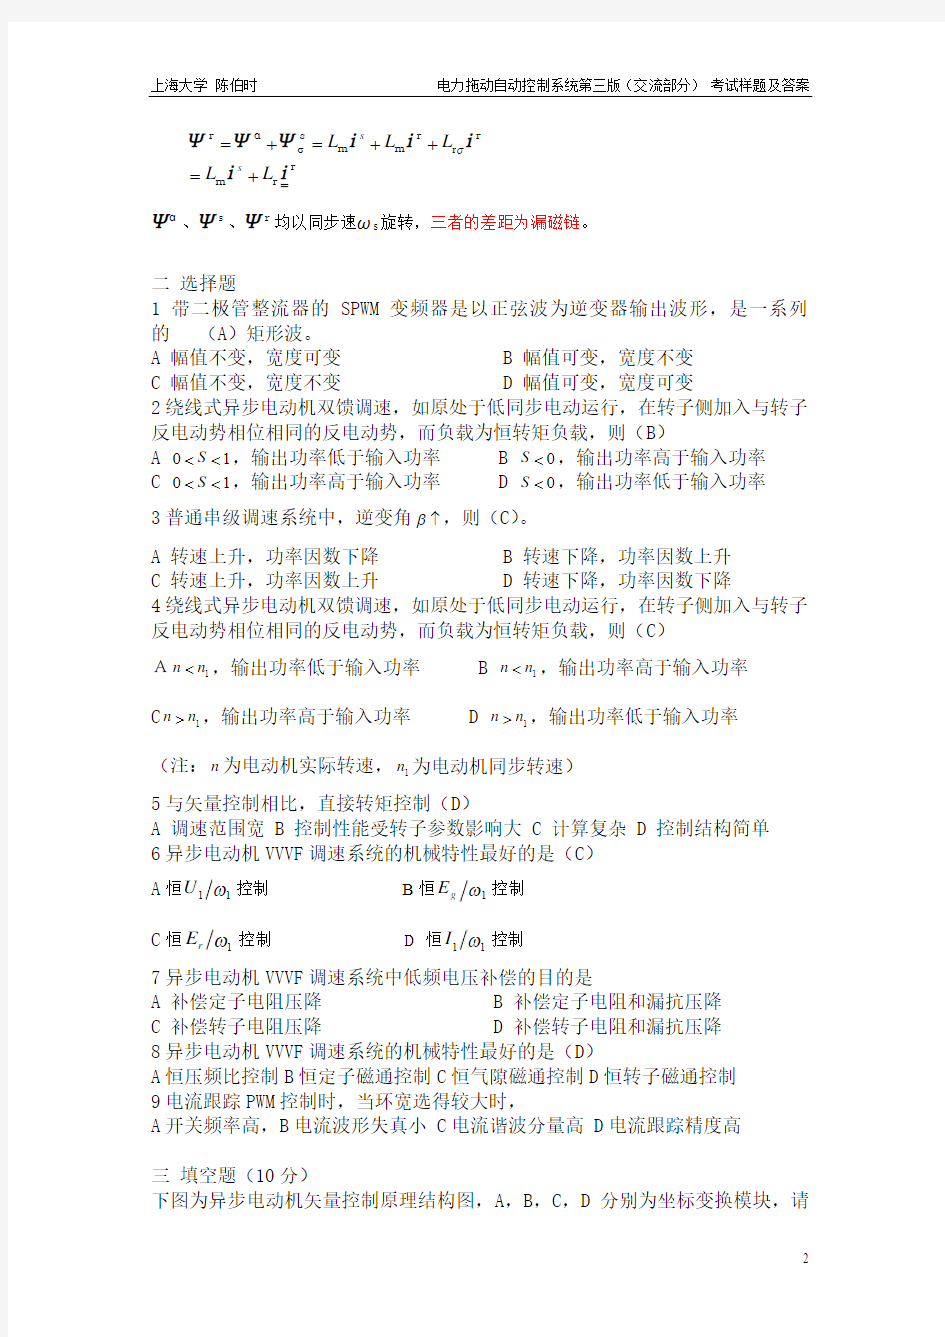 上海大学陈伯时电力拖动自动控制系统第三版(交流部分) 考试样题及答案